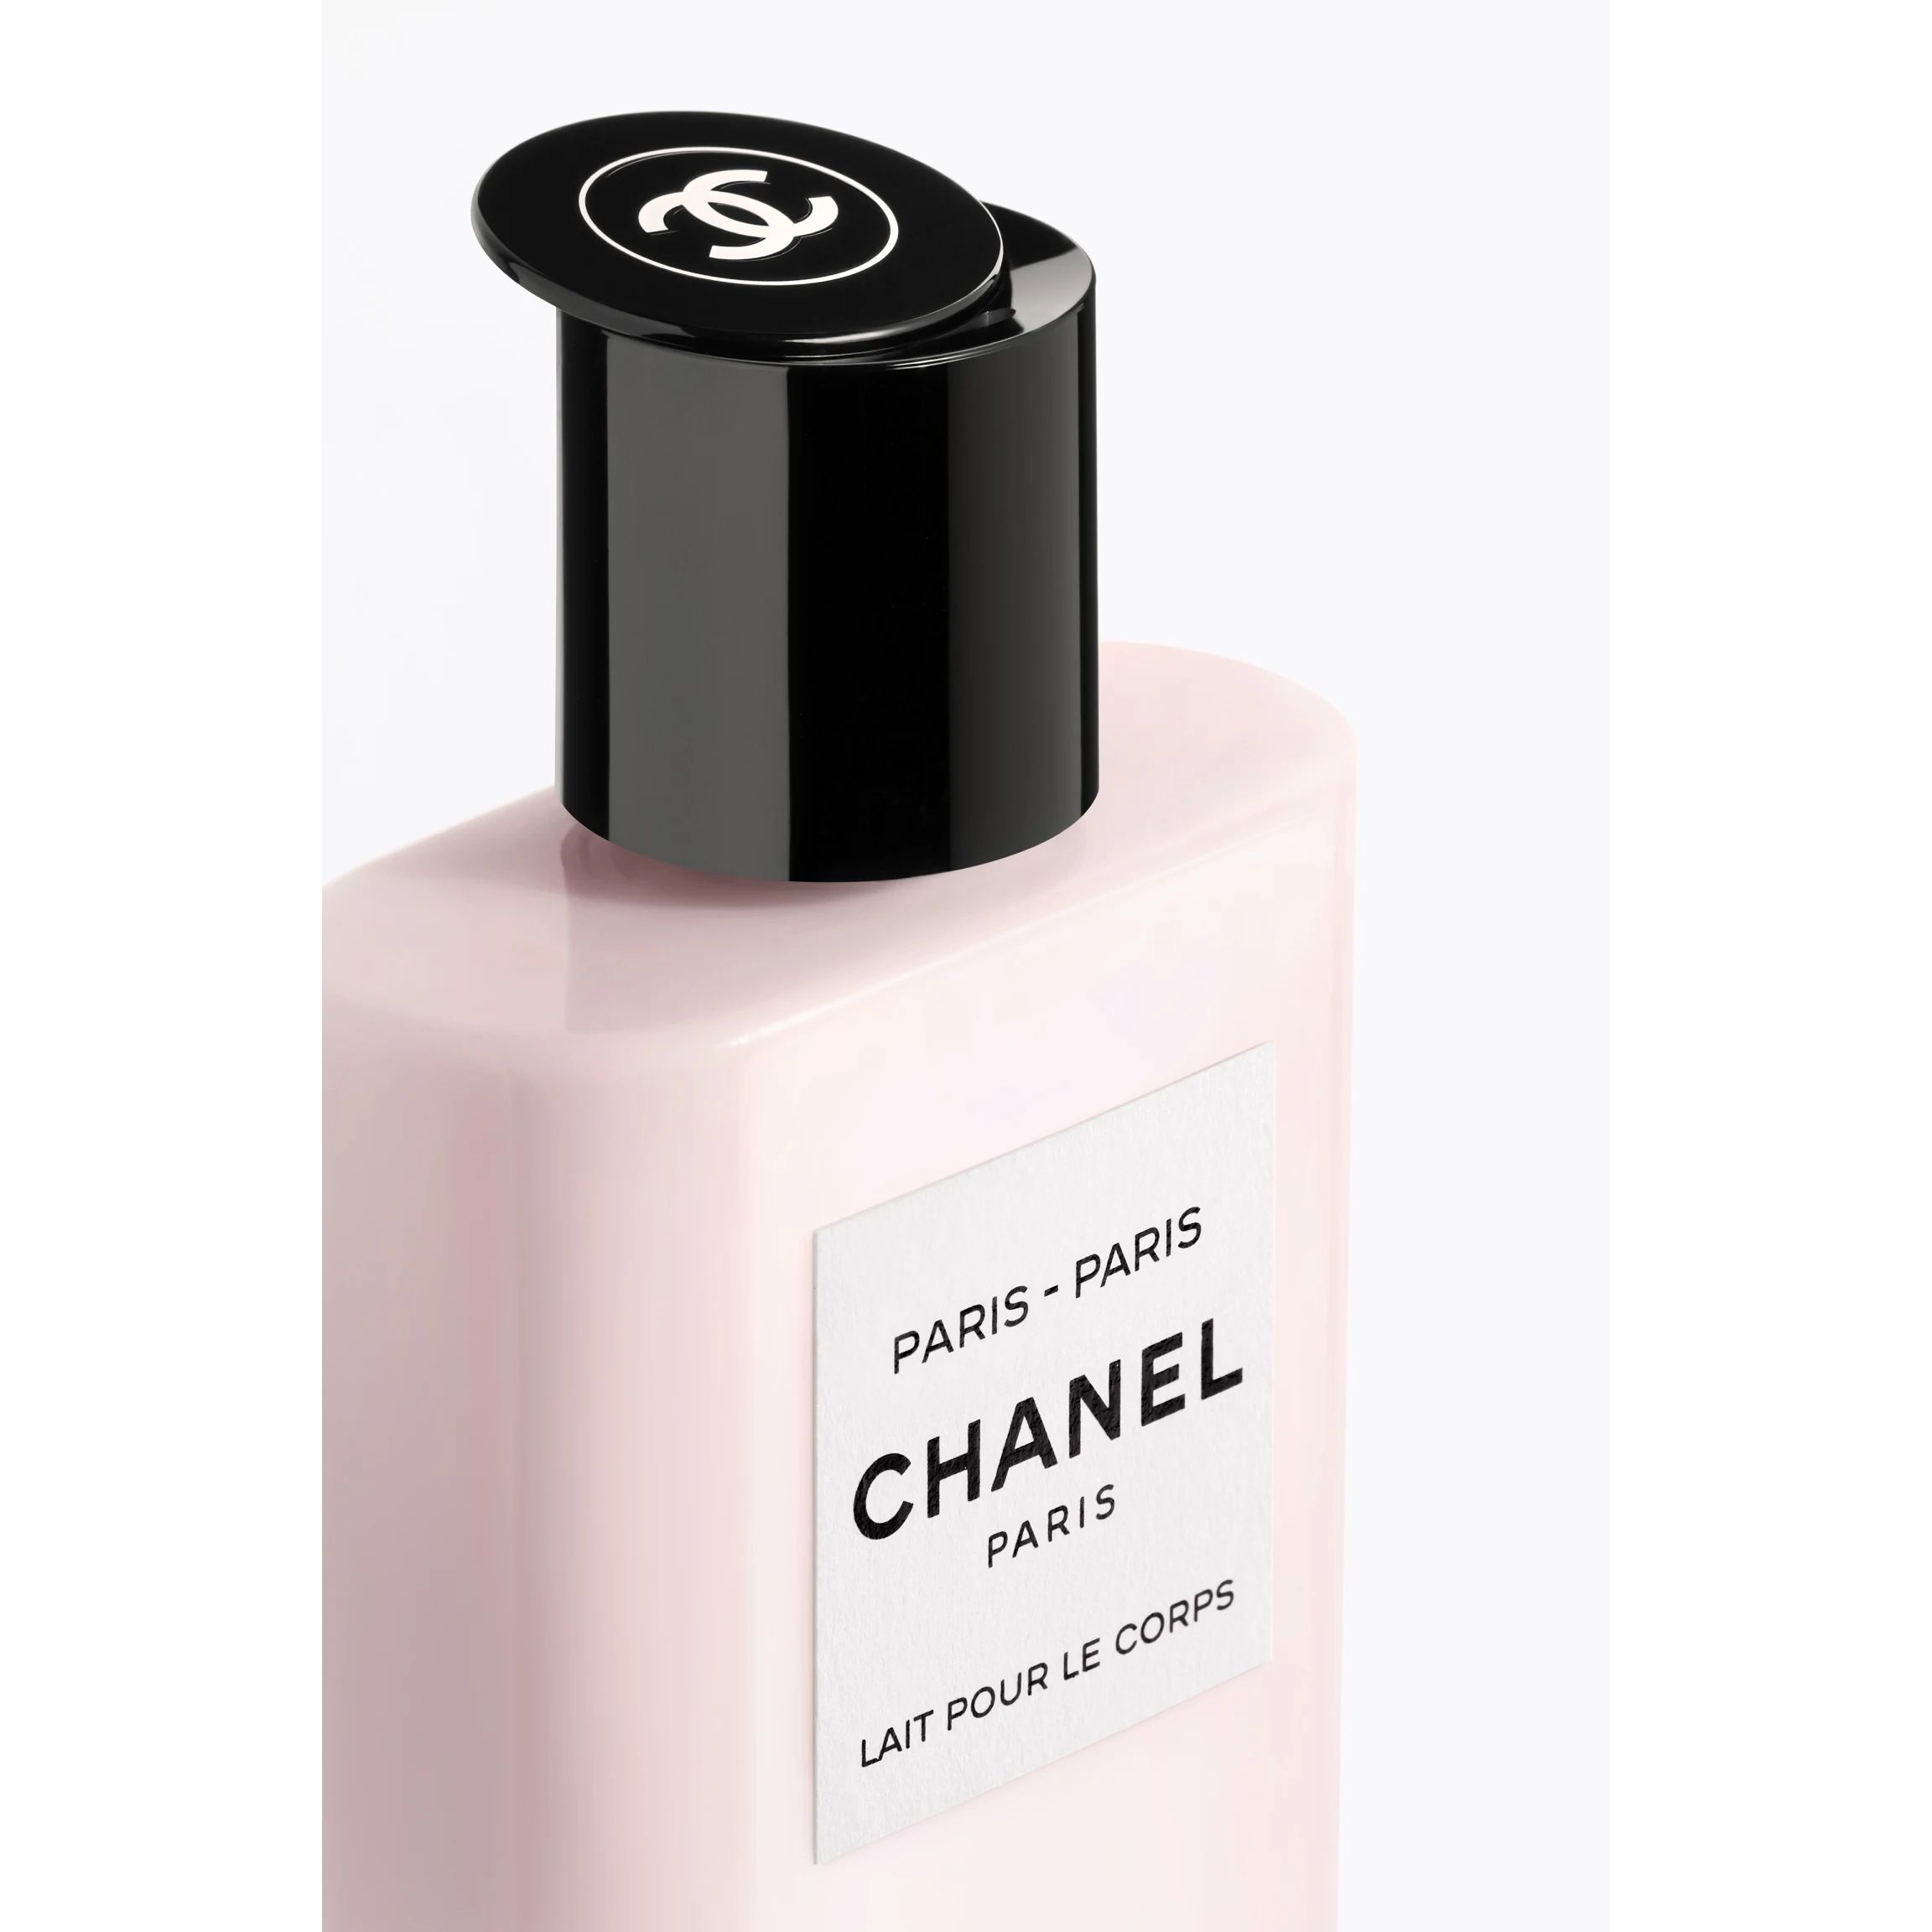 PARIS-PARIS LES EAUX DE CHANEL – Body Lotion  - 6.8 FL. OZ. | CHANEL | Chanel, Inc. (US)